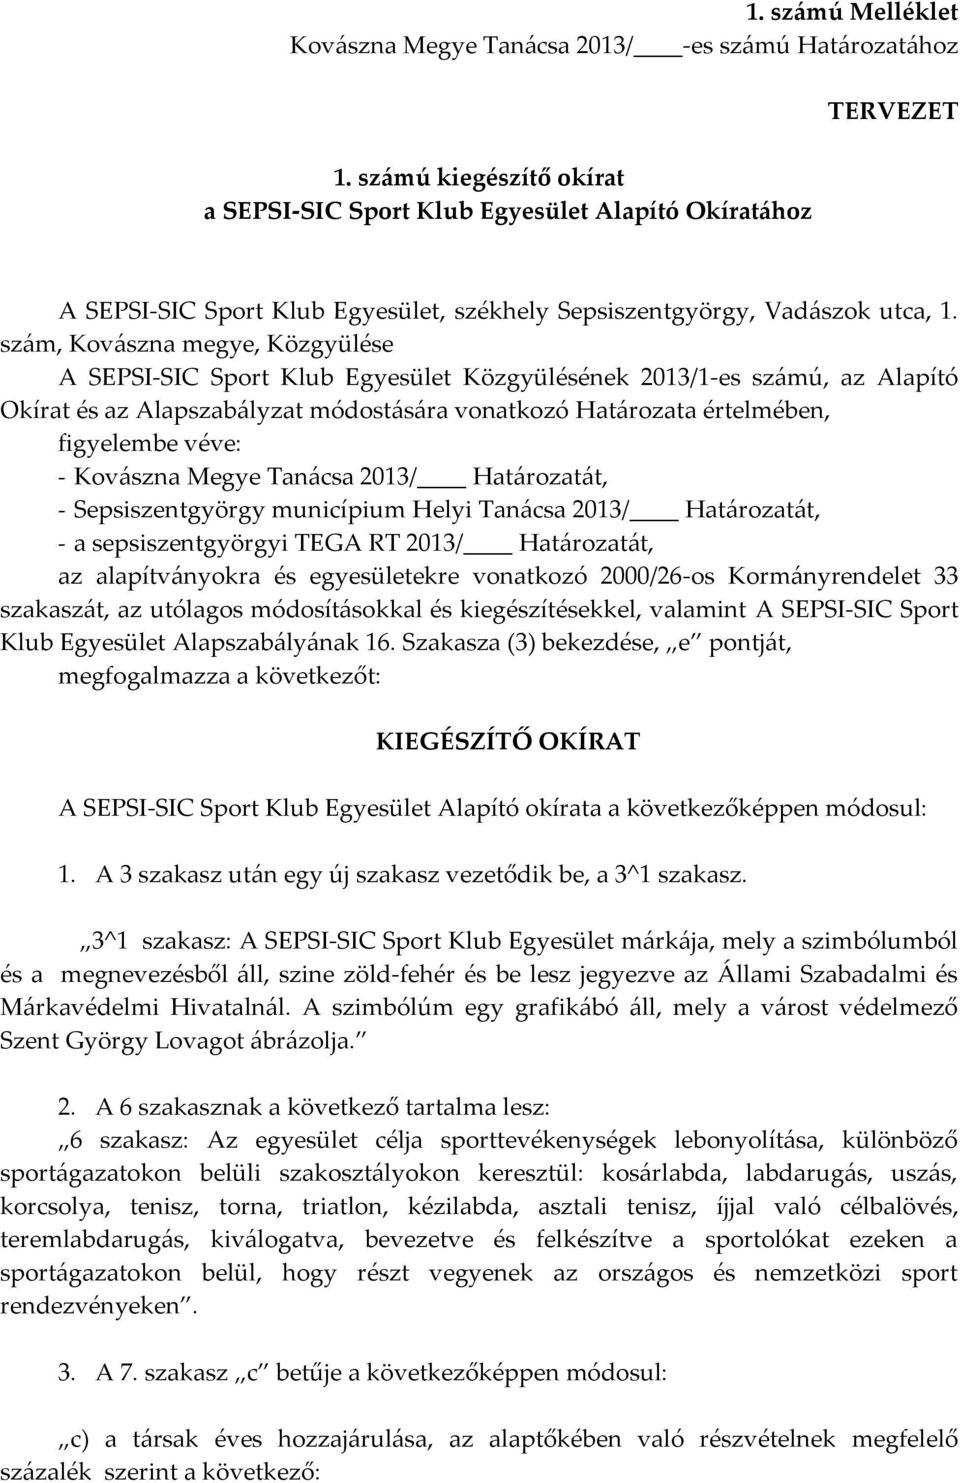 szám, Kovászna megye, Közgyülése A SEPSI-SIC Sport Klub Egyesület Közgyülésének 2013/1-es számú, az Alapító Okírat és az Alapszabályzat módostására vonatkozó Határozata értelmében, figyelembe véve: -